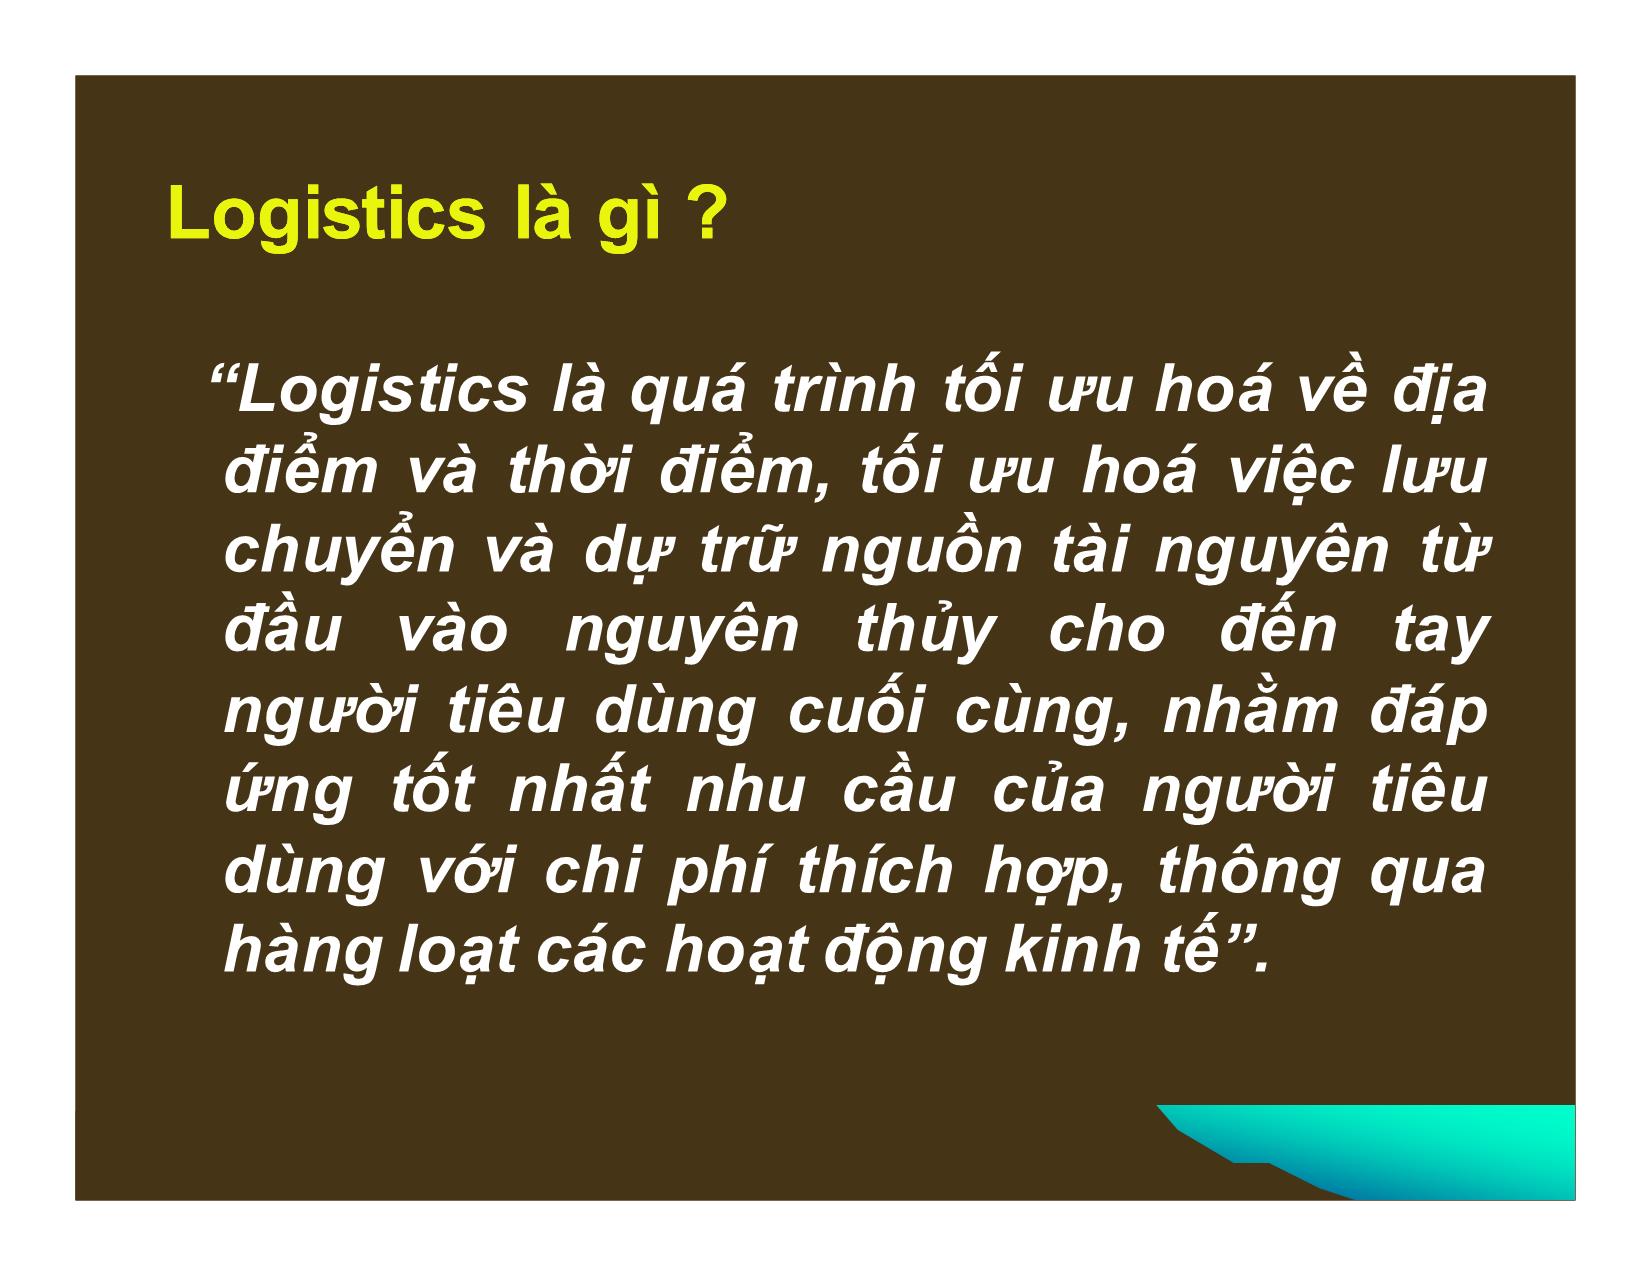 Phát triển dịch vụ logistics ở Việt Nam trong điều kiện hội nhập kinh tế quốc tế trang 3